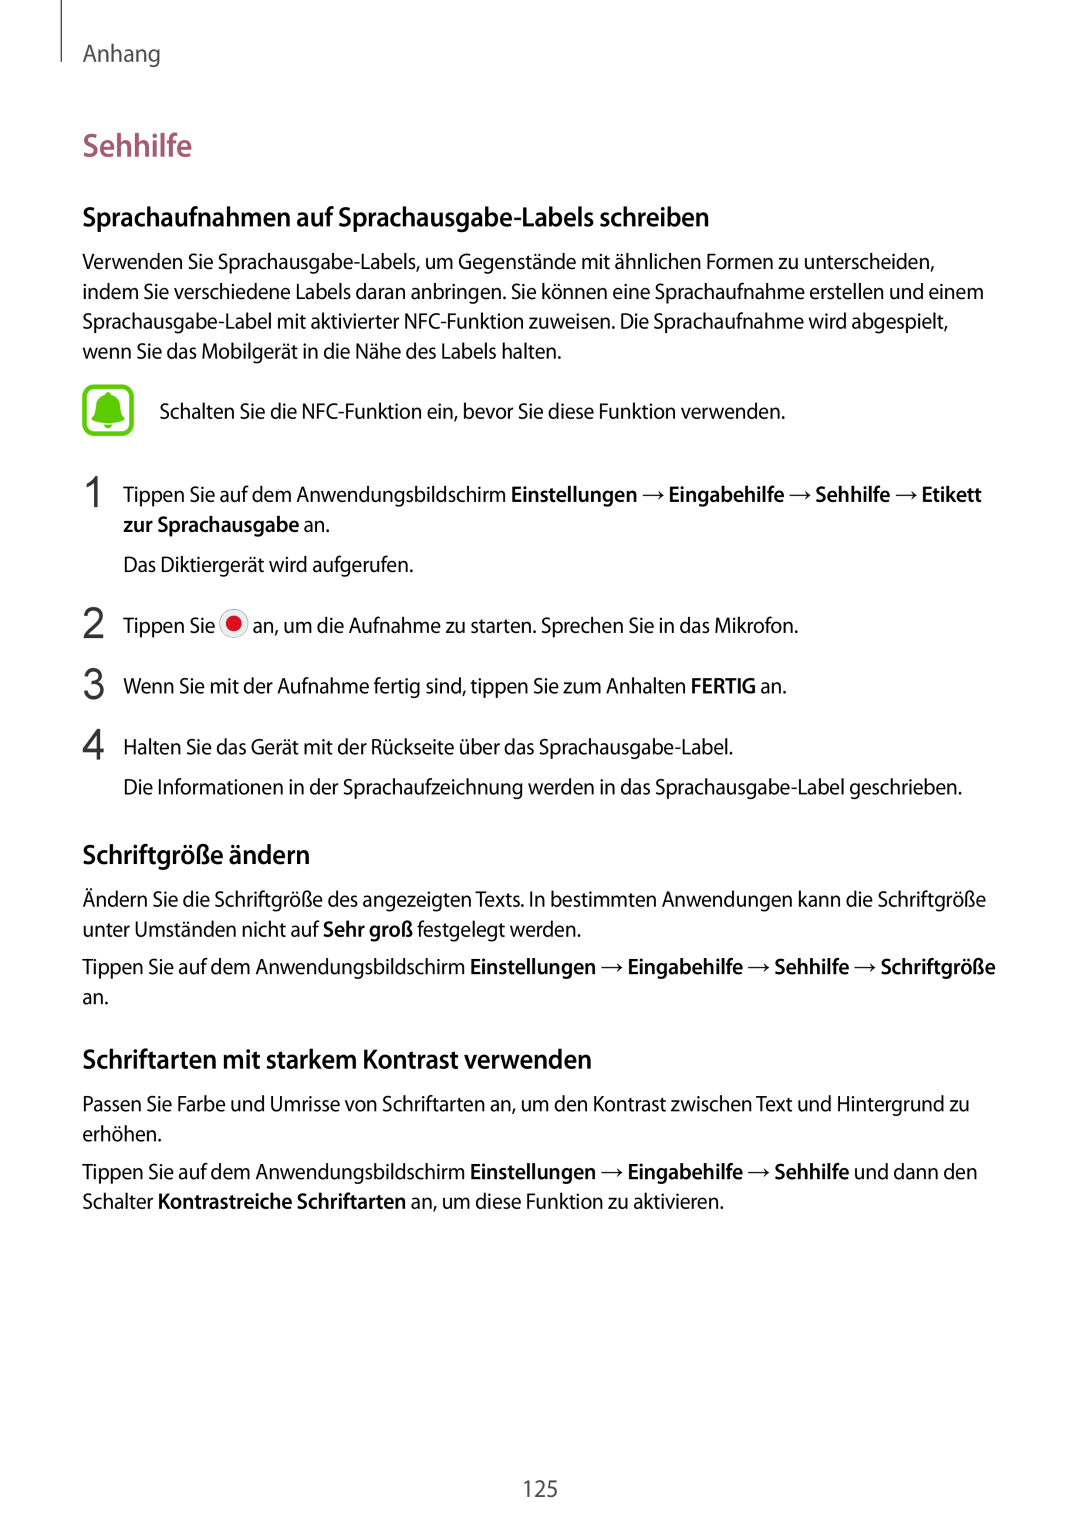 Samsung SM-G920FZWEDBT manual Sehhilfe, Sprachaufnahmen auf Sprachausgabe-Labels schreiben, Schriftgröße ändern, Anhang 